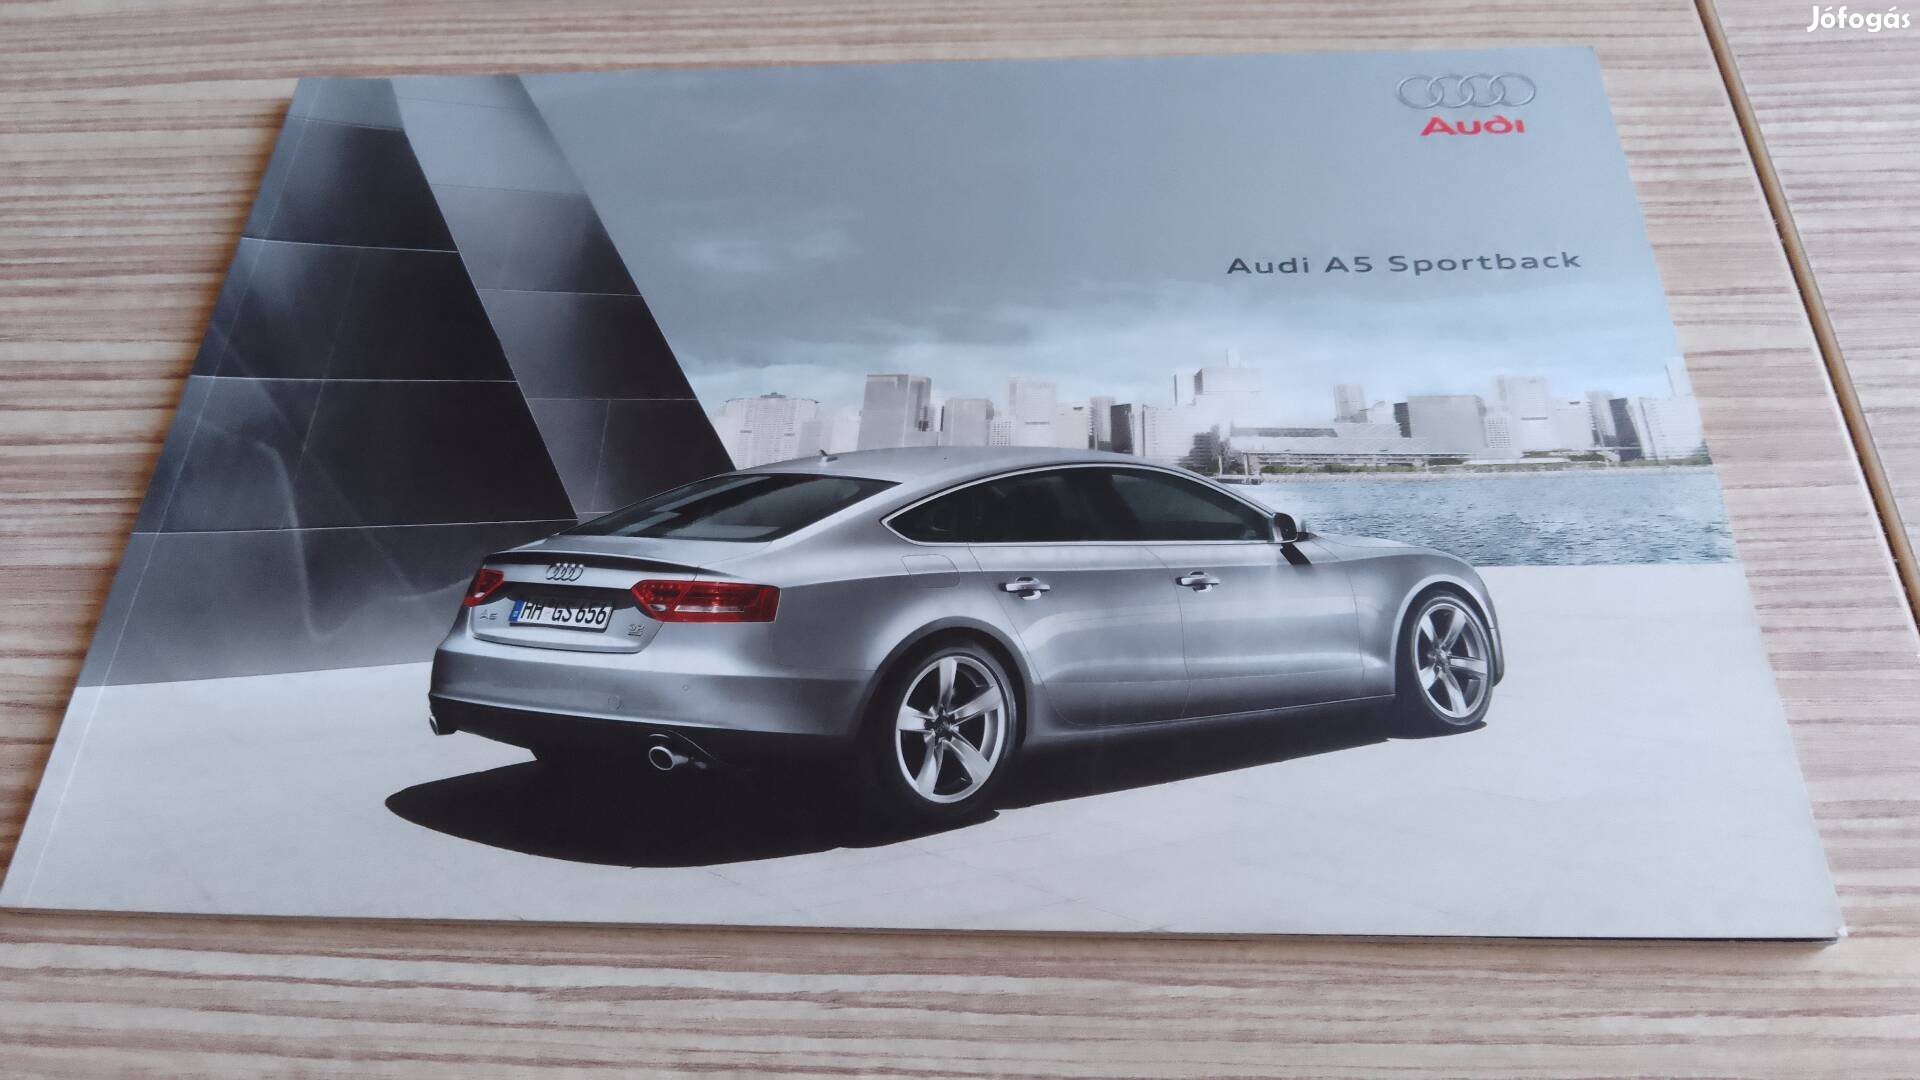 Audi A5 Sportback (2009) magyar nyelvű prospektus katalógus.